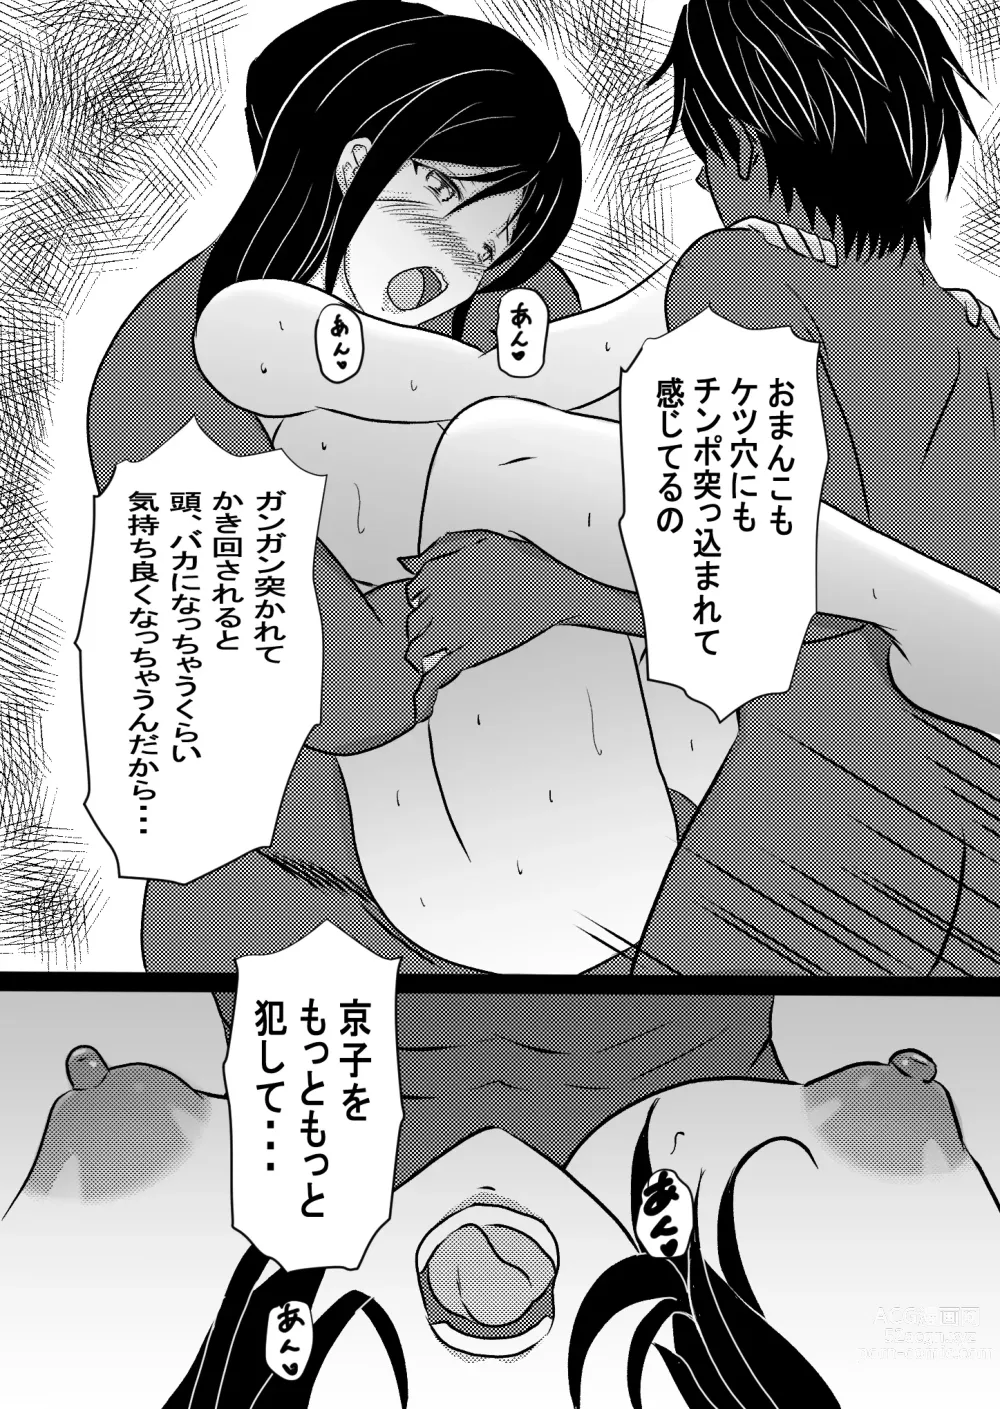 Page 40 of doujinshi Onna Ero Mangaka Tachibana Kyouko wa Yume o Miru